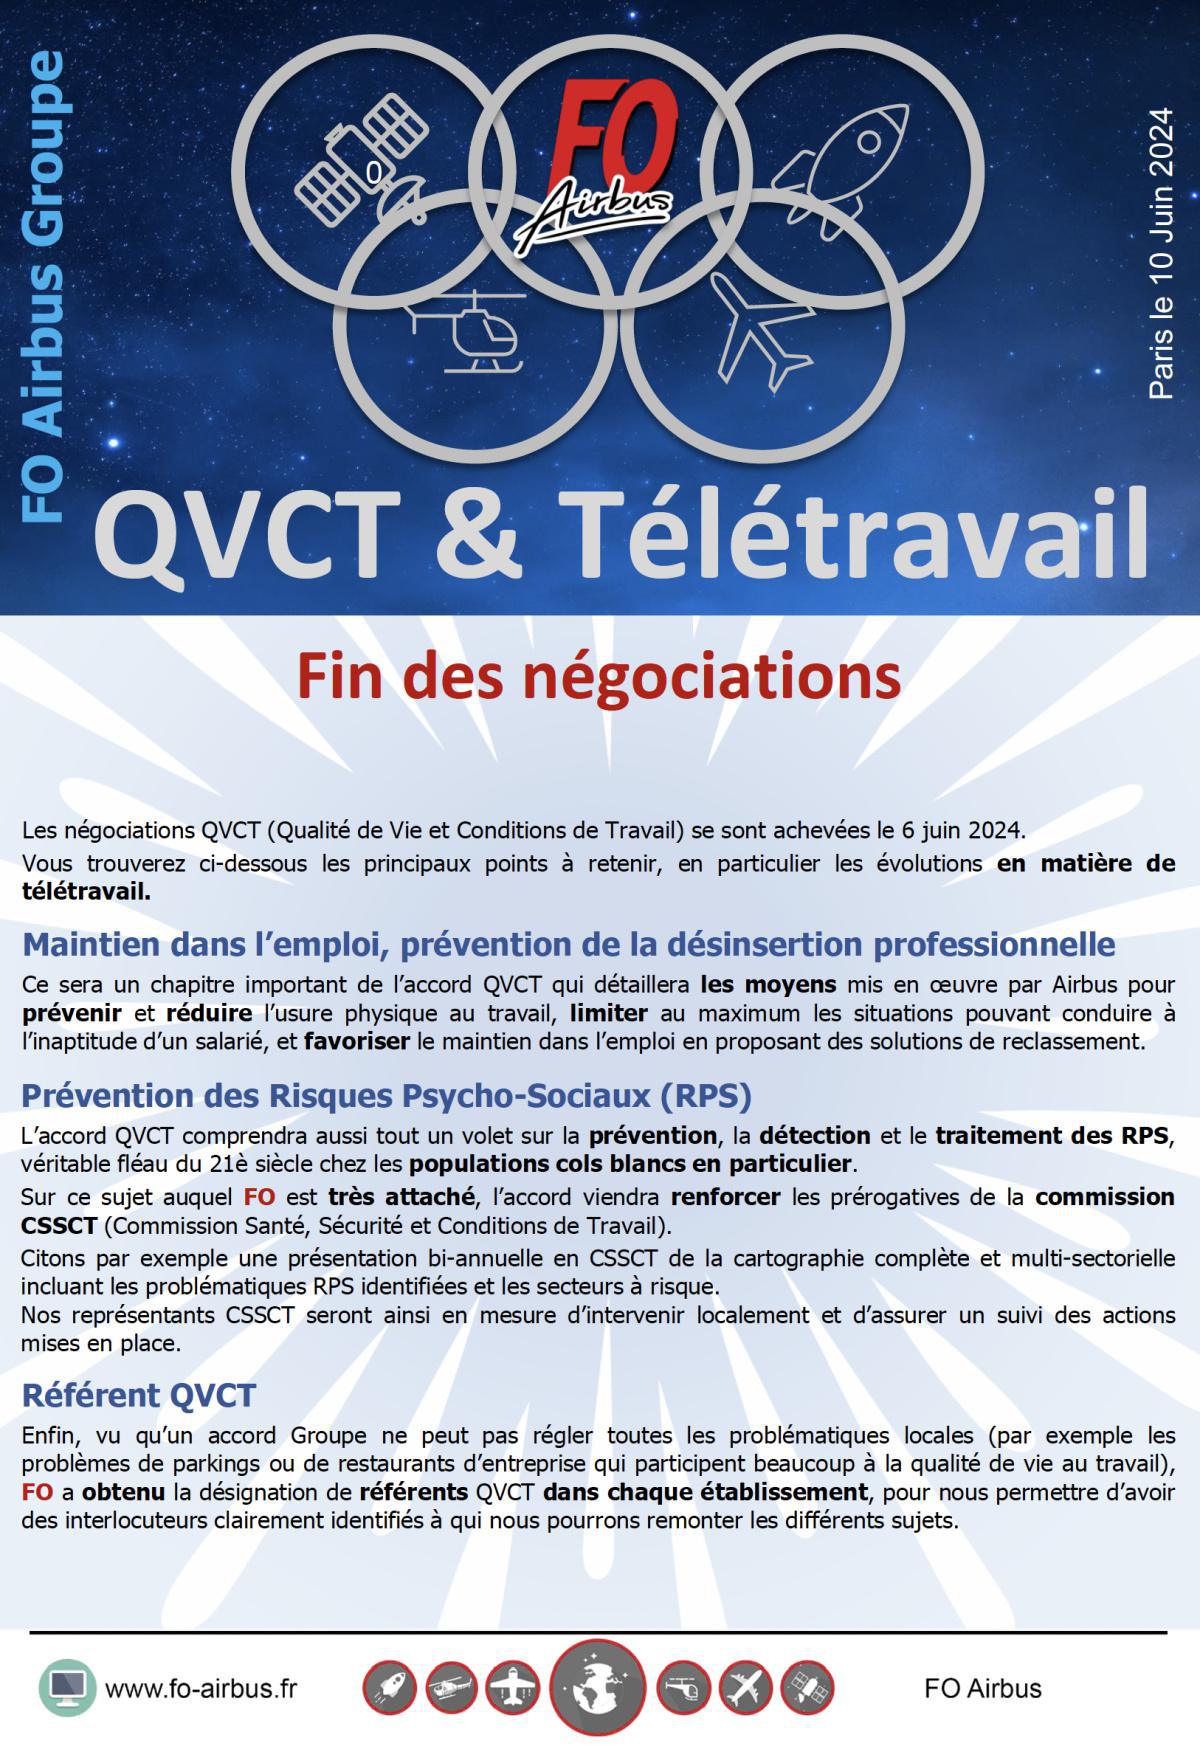 QVTC & Télétravail